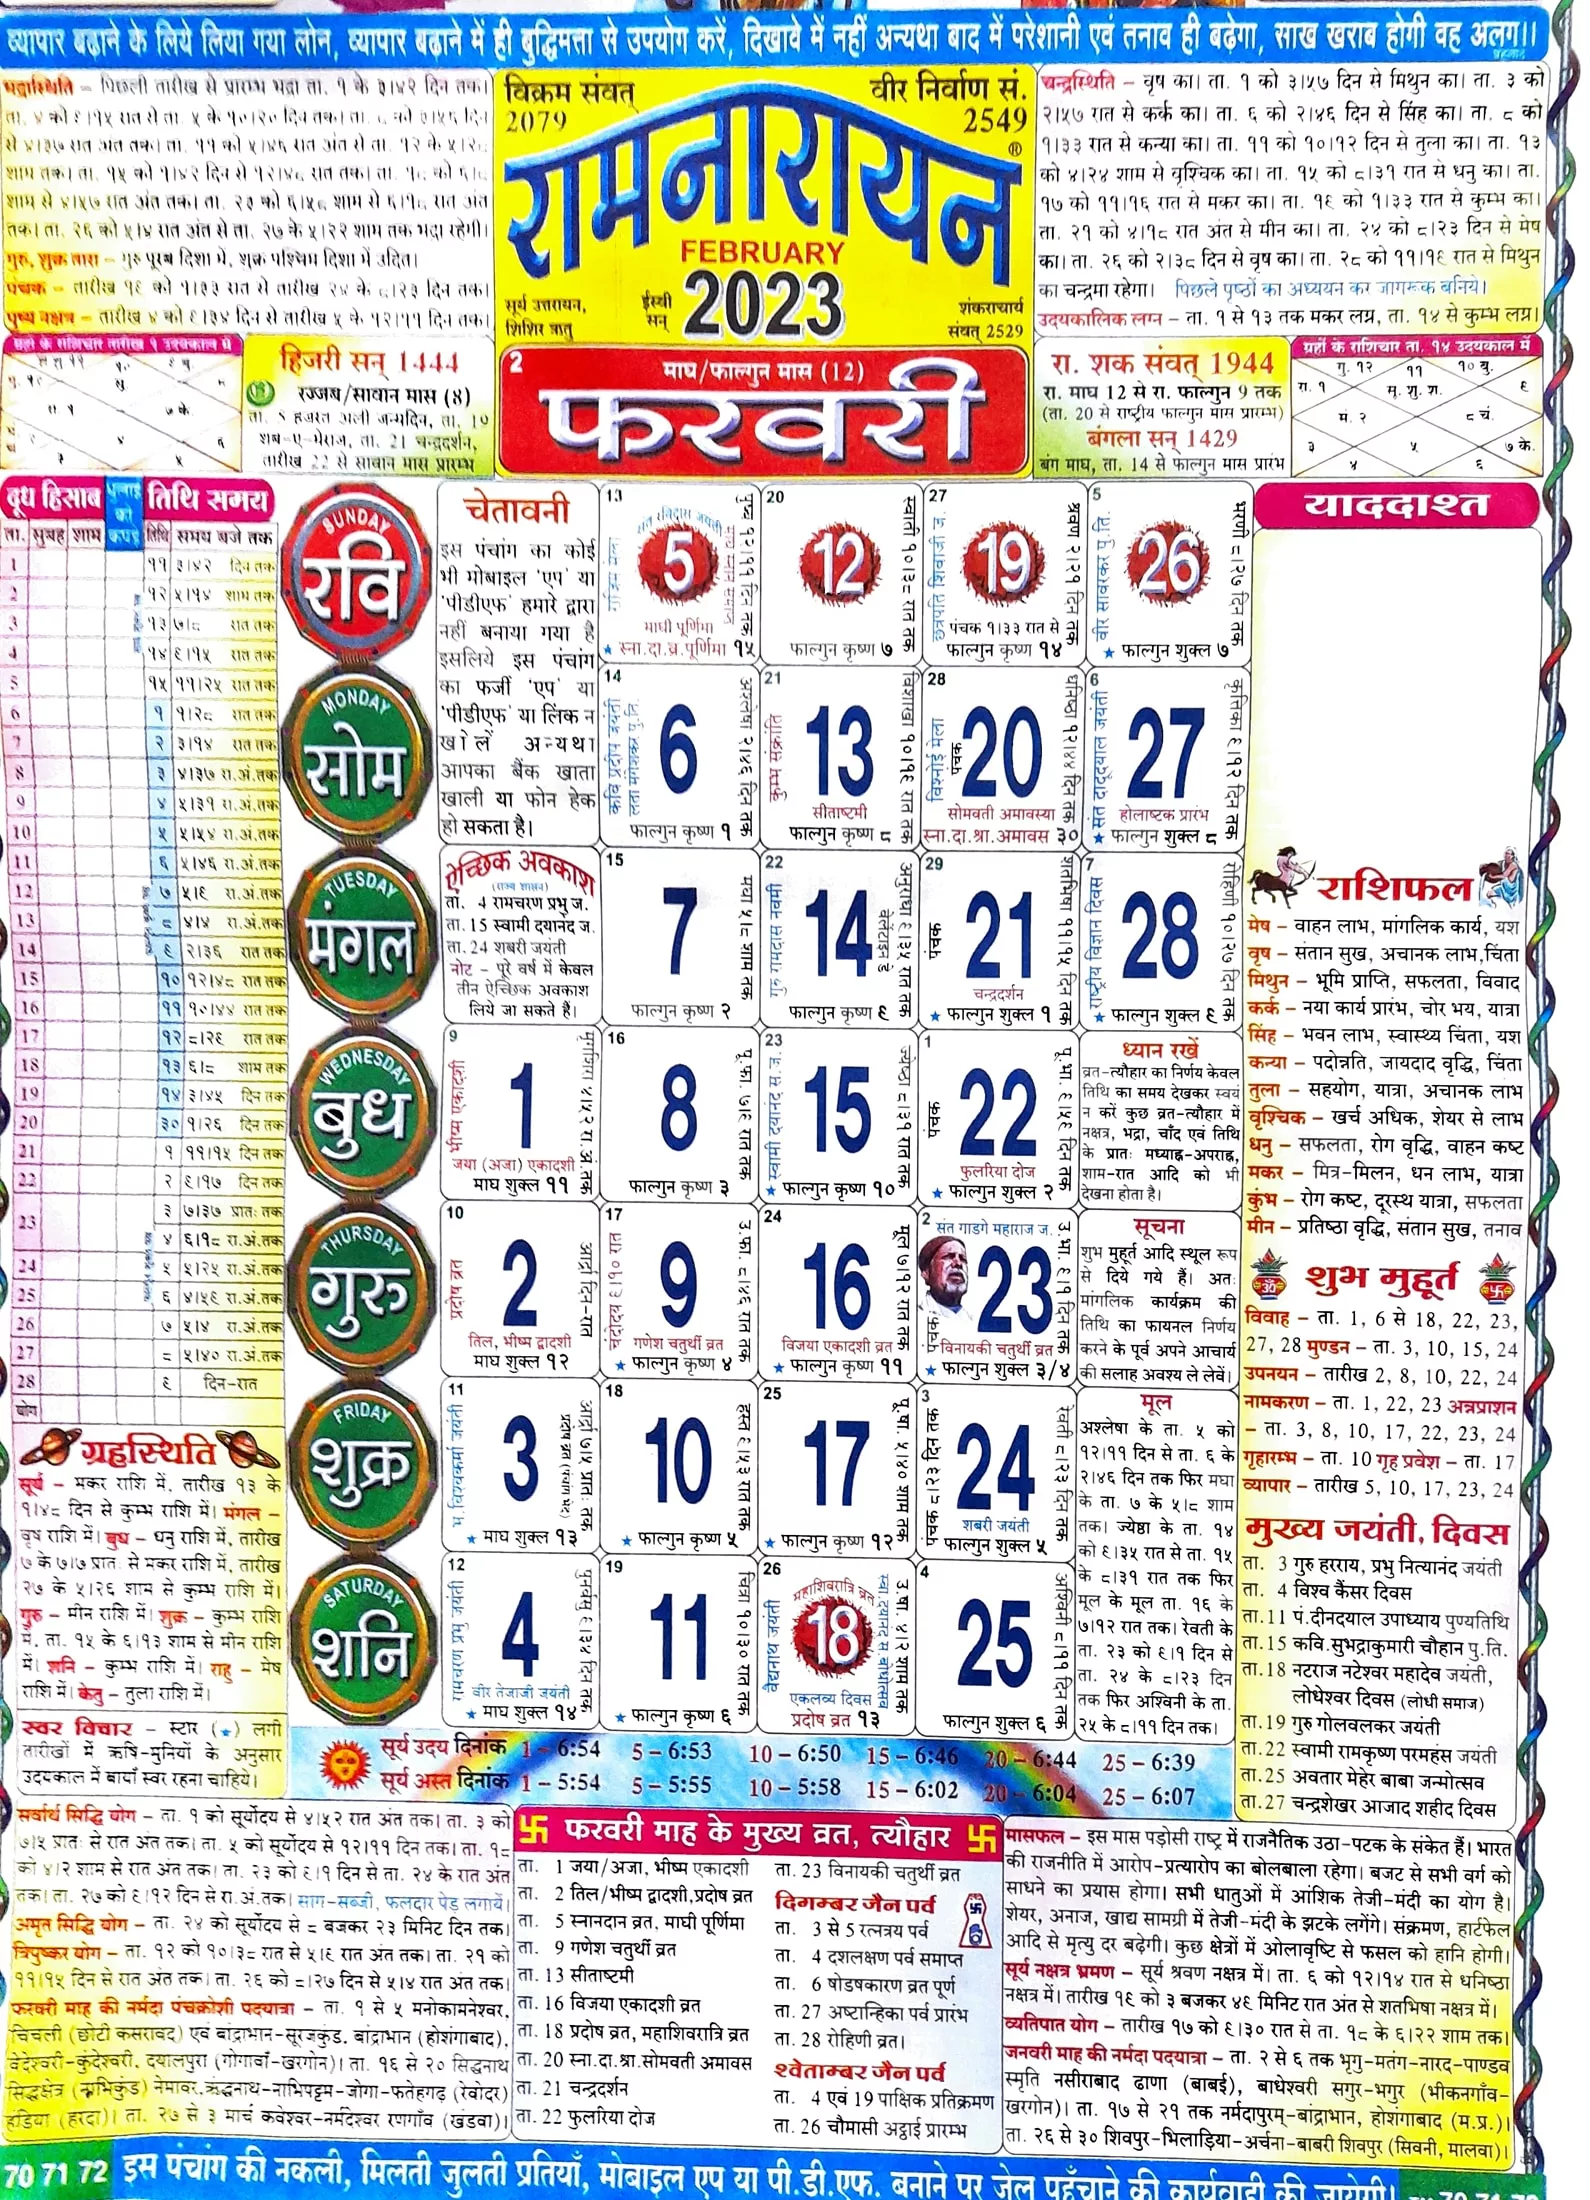 lala-ramswaroop-calendar-2023-2023-panchang-pdf-file-free-download